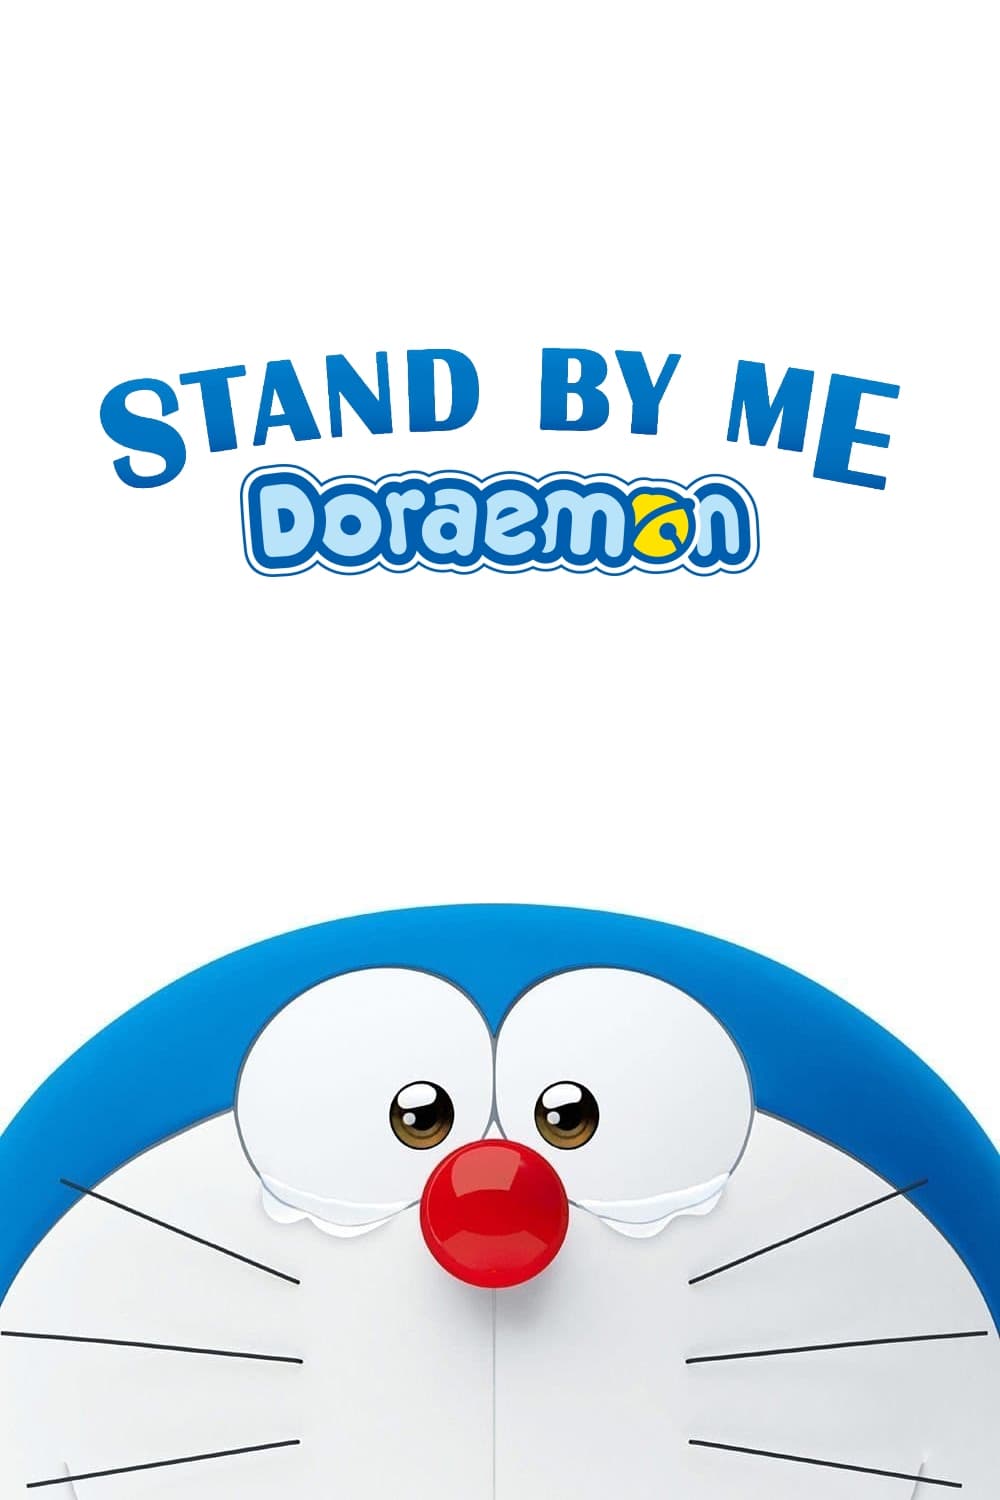 ดูหนังออนไลน์ฟรี Stand by Me Doraemon